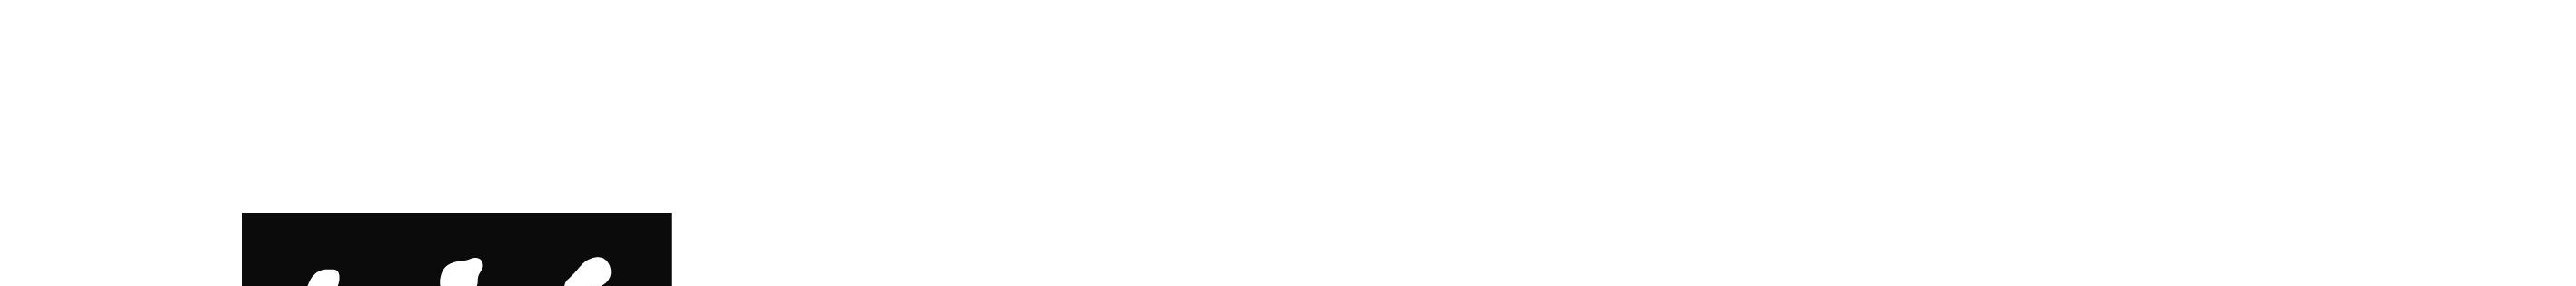 Nowy Sącz, dnia 18.03.2013 r. Nr sprawy: ZP.382-54/2012 Otrzymują: wg rozdzielnika Dotyczy: postępowania o udzielenie zamówienia publicznego, prowadzonego w trybie przetargu nieograniczonego pn.